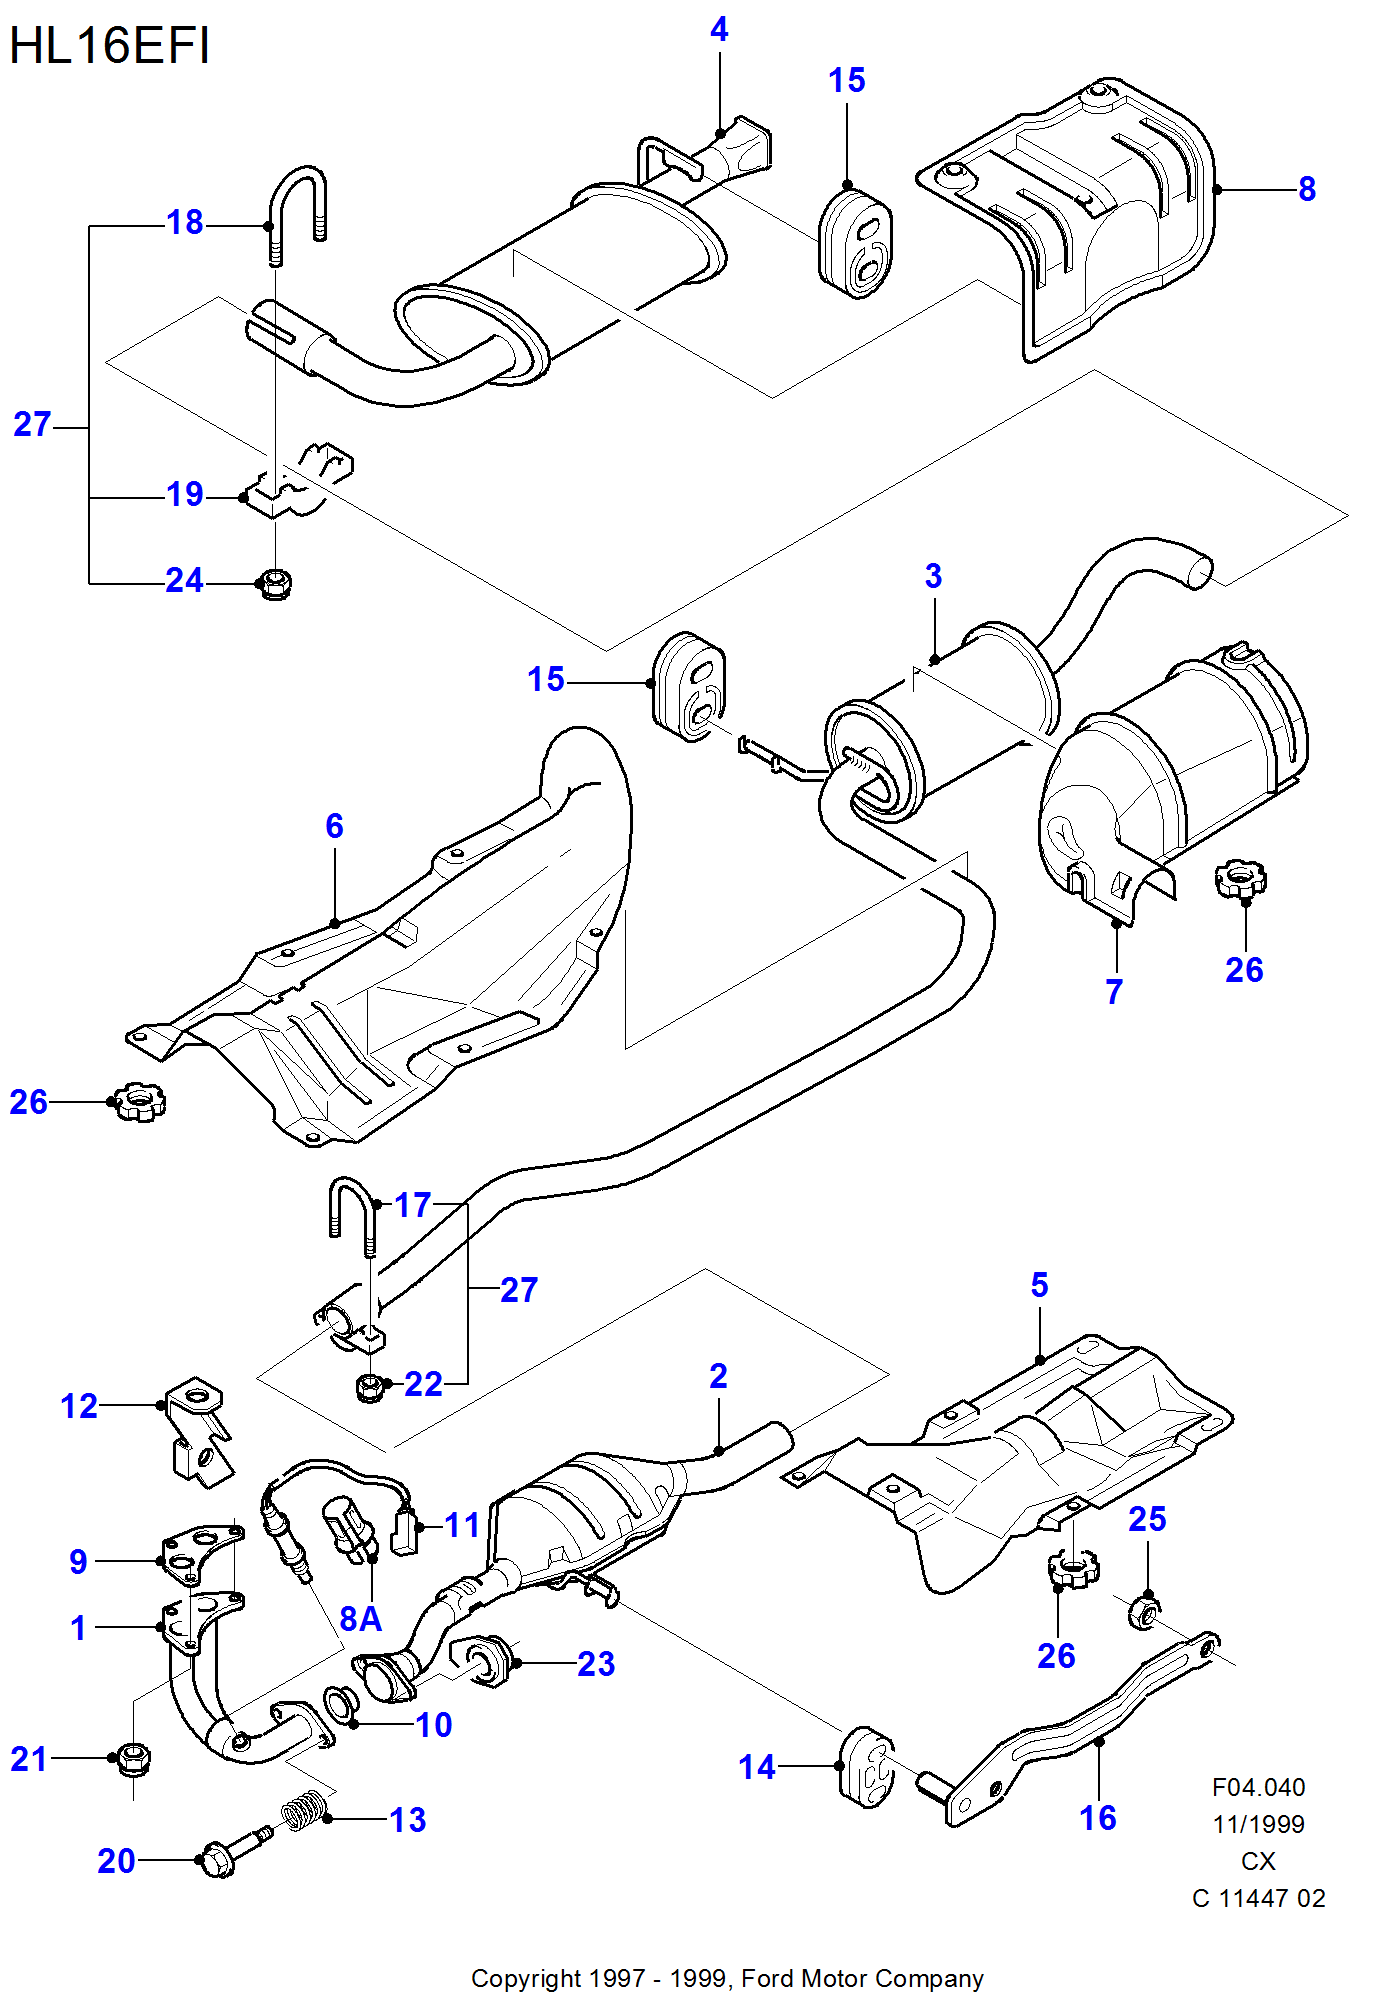 Exhaust System With Catalyst إلى عن على Ford Fiesta Fiesta 1989-1996               (CX)